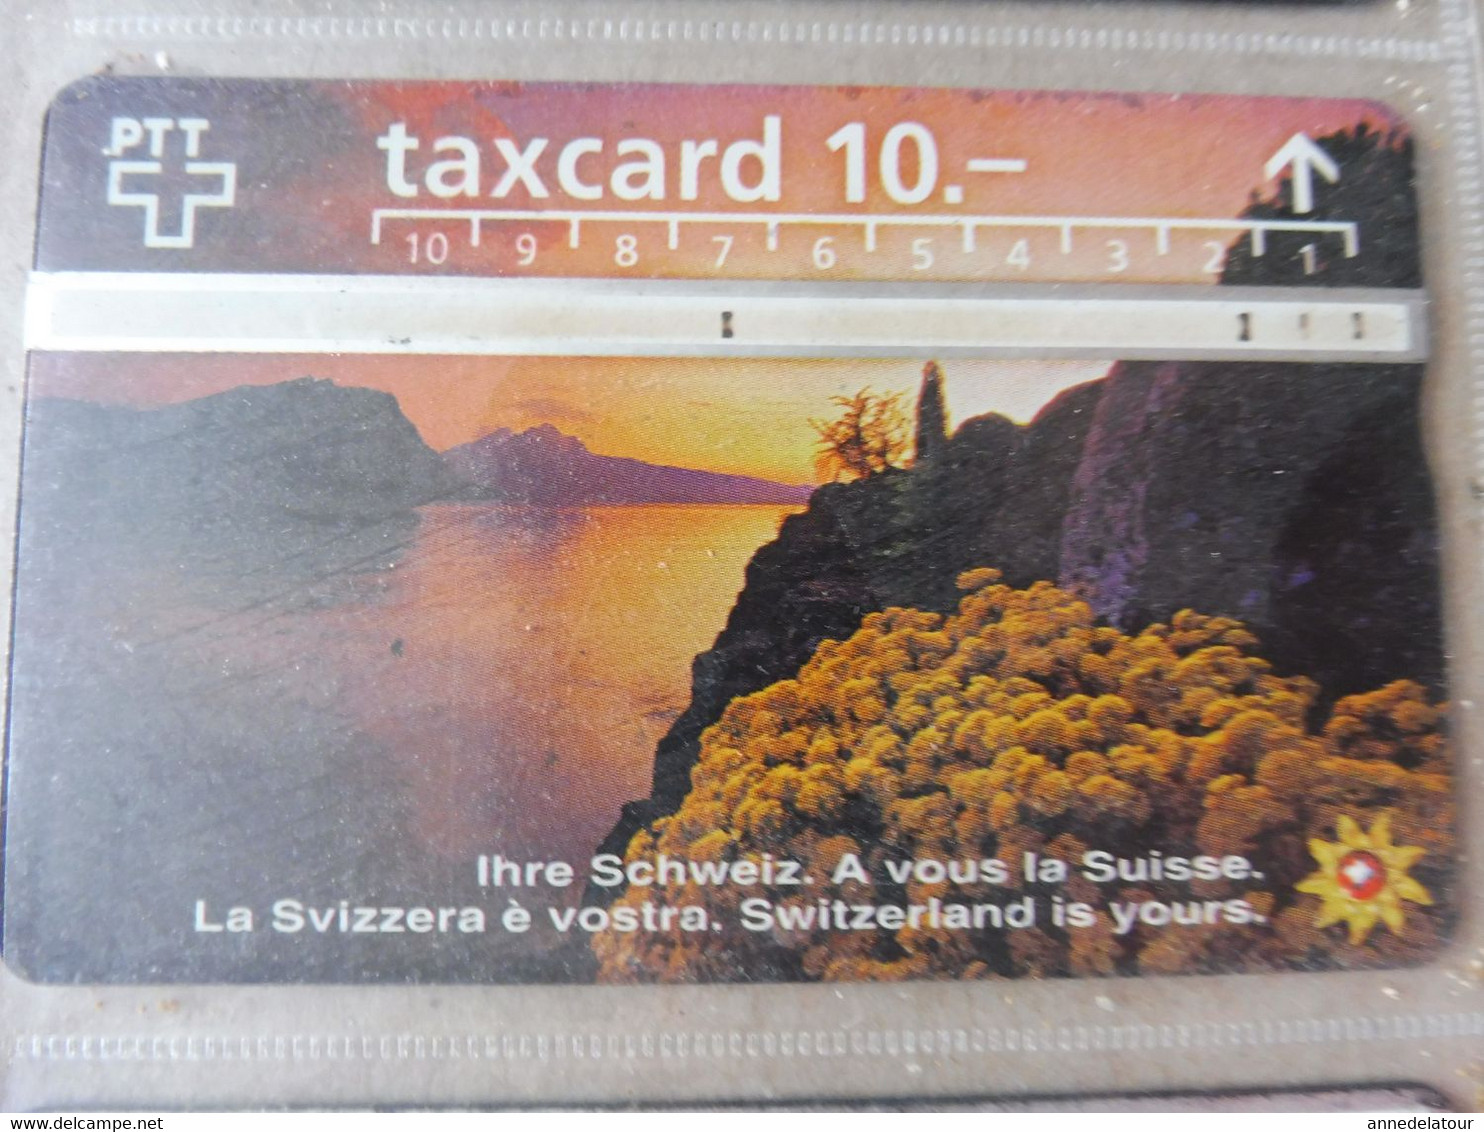 10 télécartes (cartes téléphoniques)  TAXCARD      origine Suisse